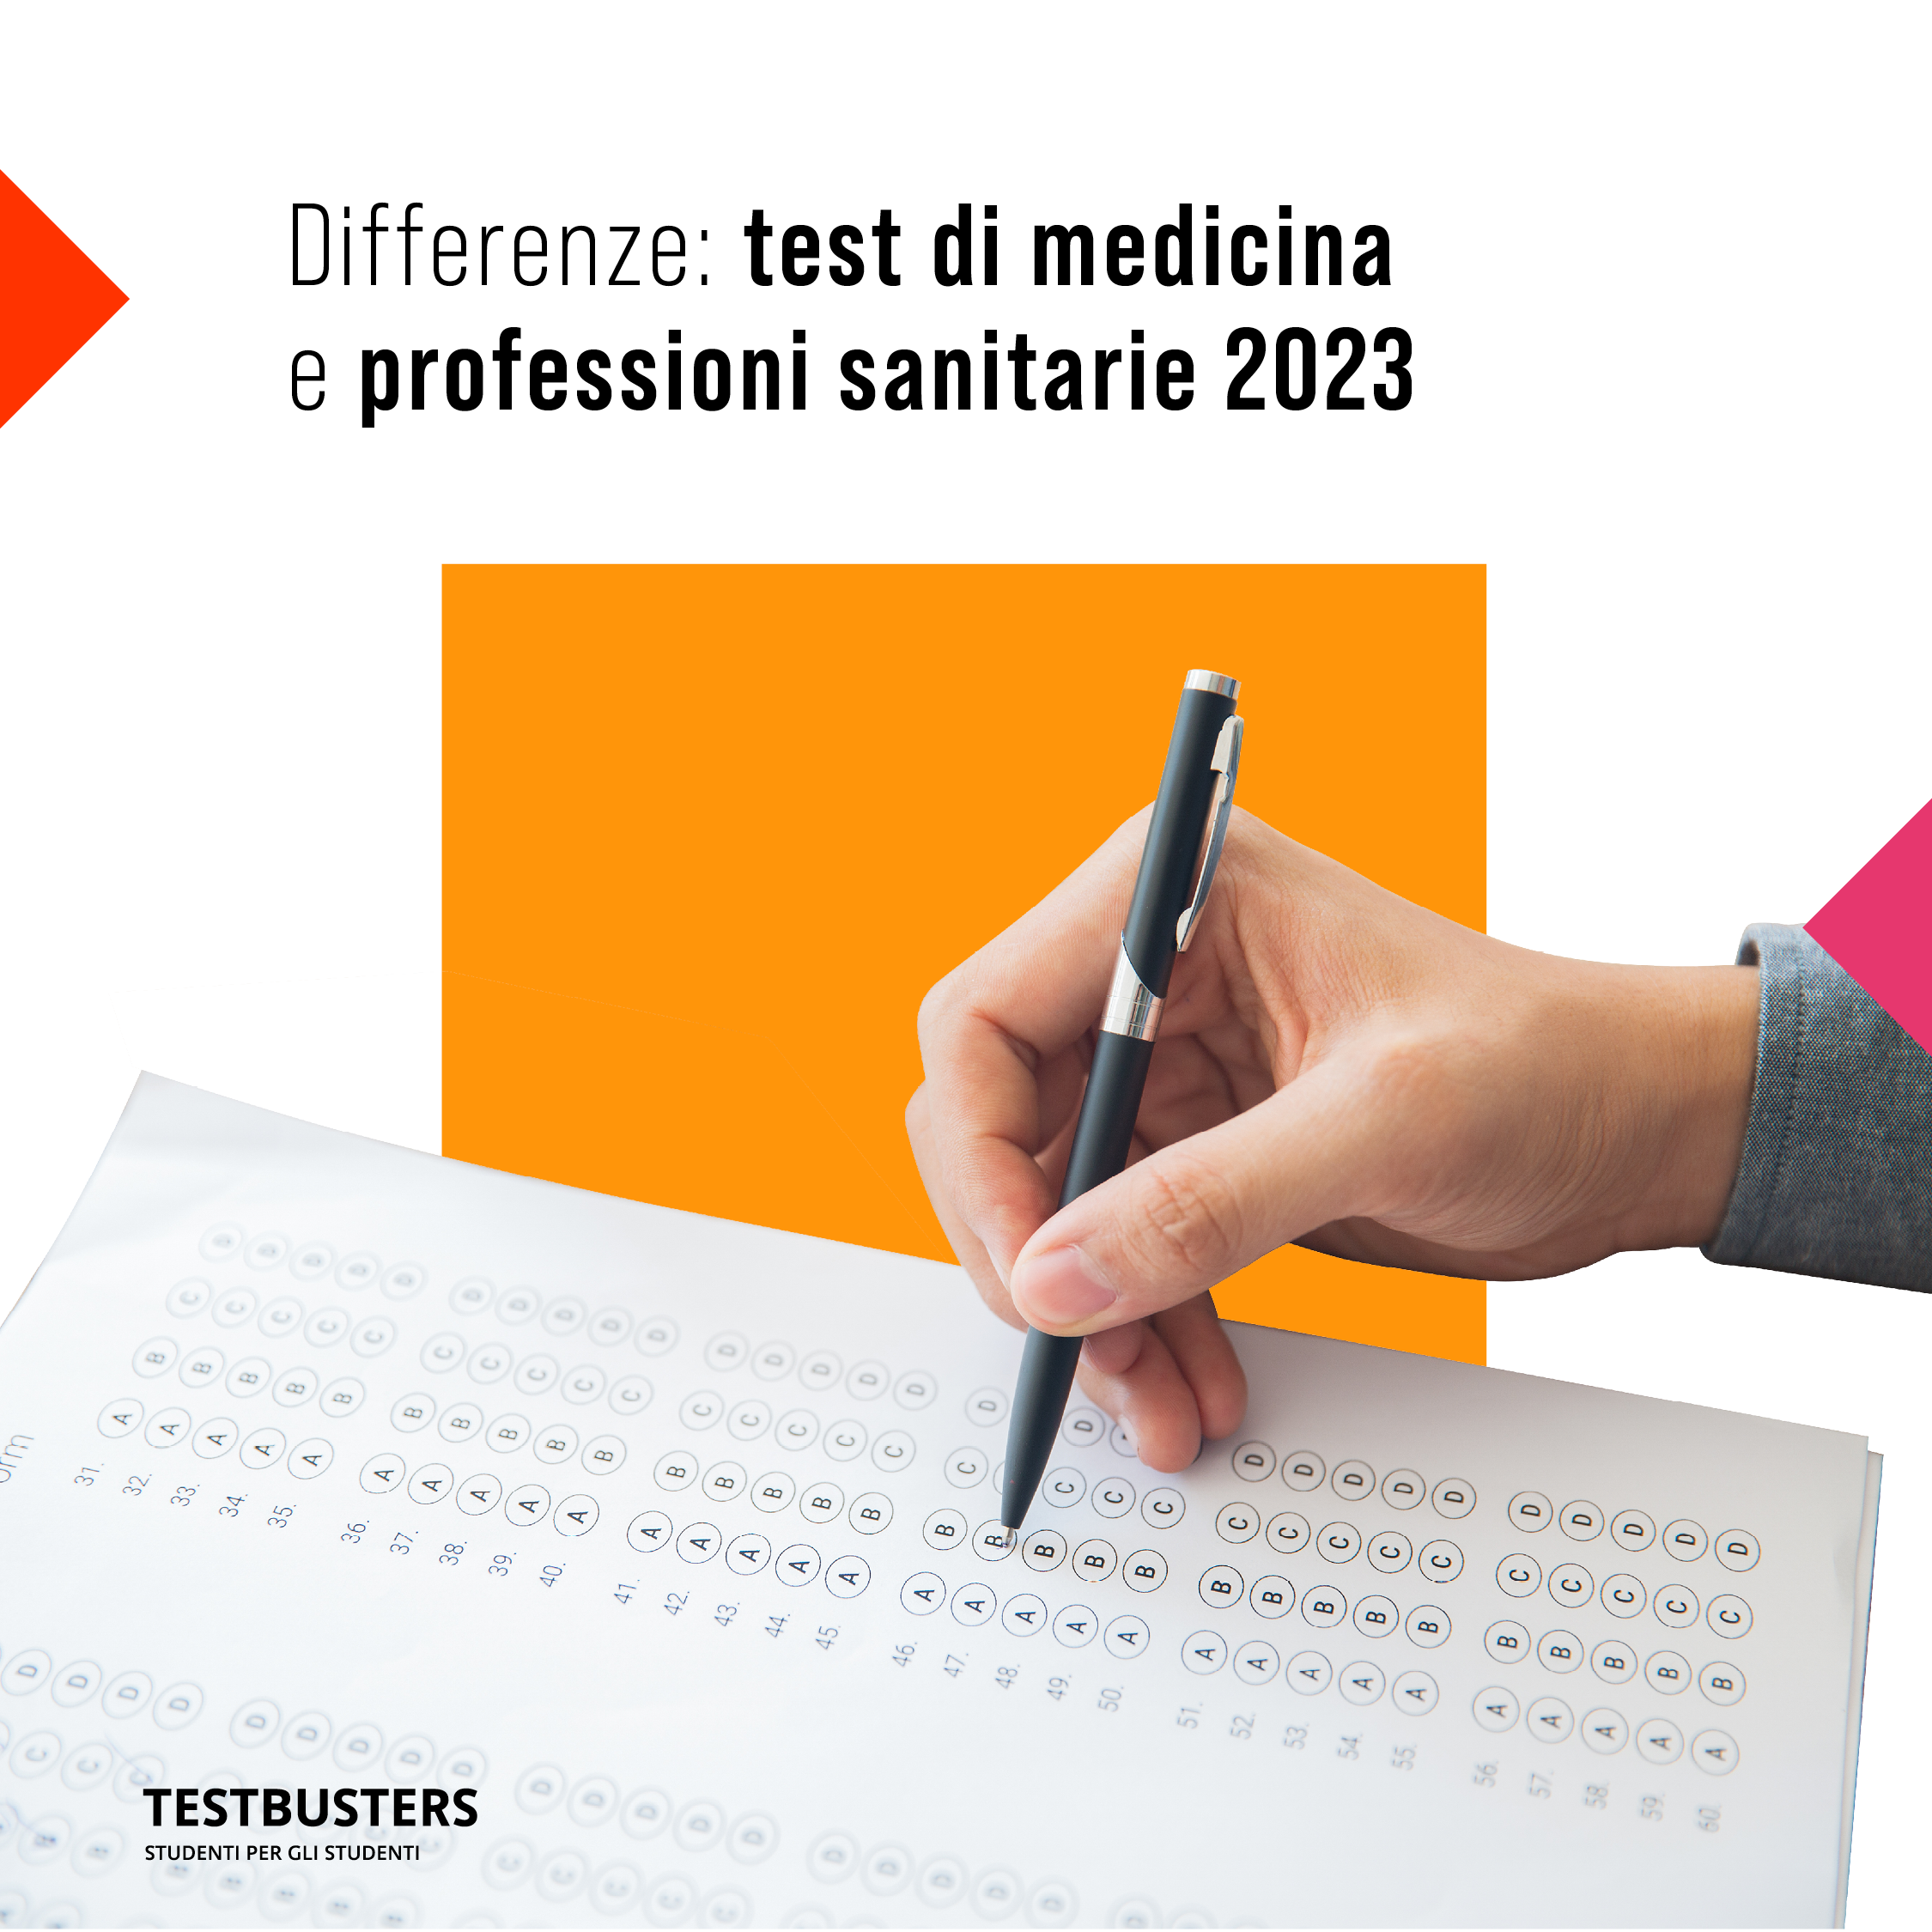 Differenze tra il test di medicina e professioni sanitarie 2023